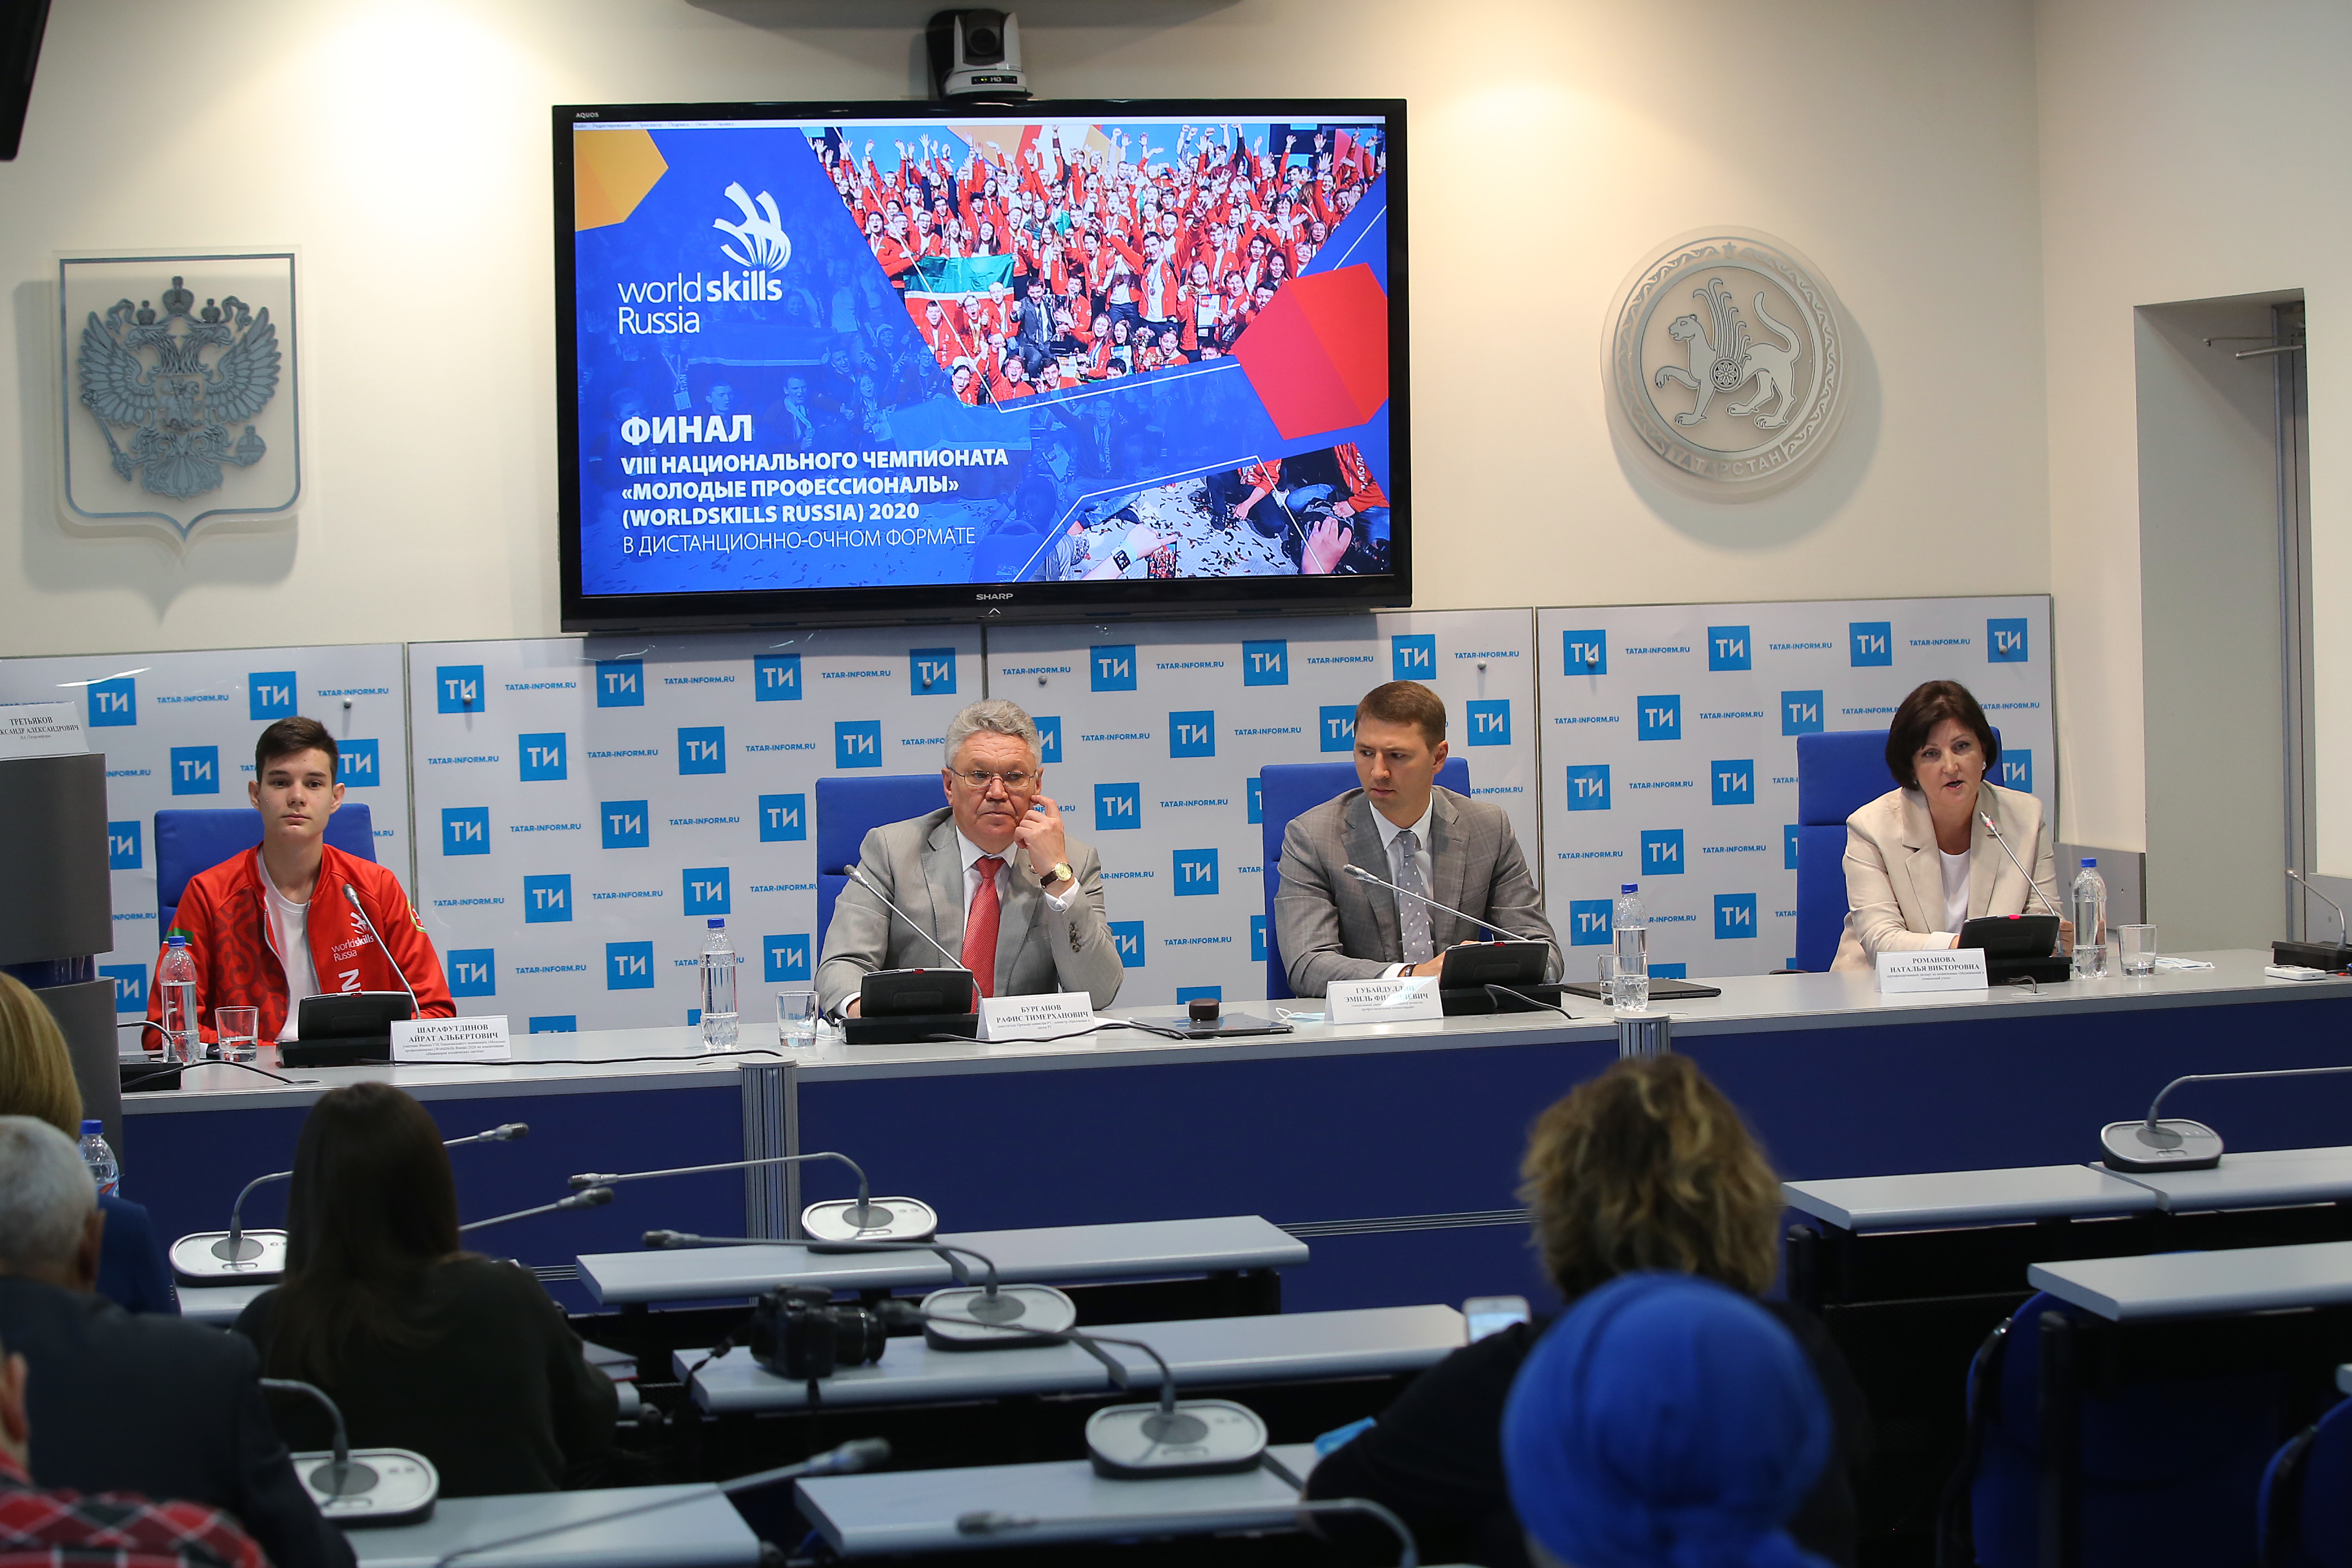 Сегодня прошла пресс-конференция, посвященная началу Финала VIII Национального чемпионата «Молодые профессионалы» (WorldSkills Russia) 2020 в дистанционно-очном формате